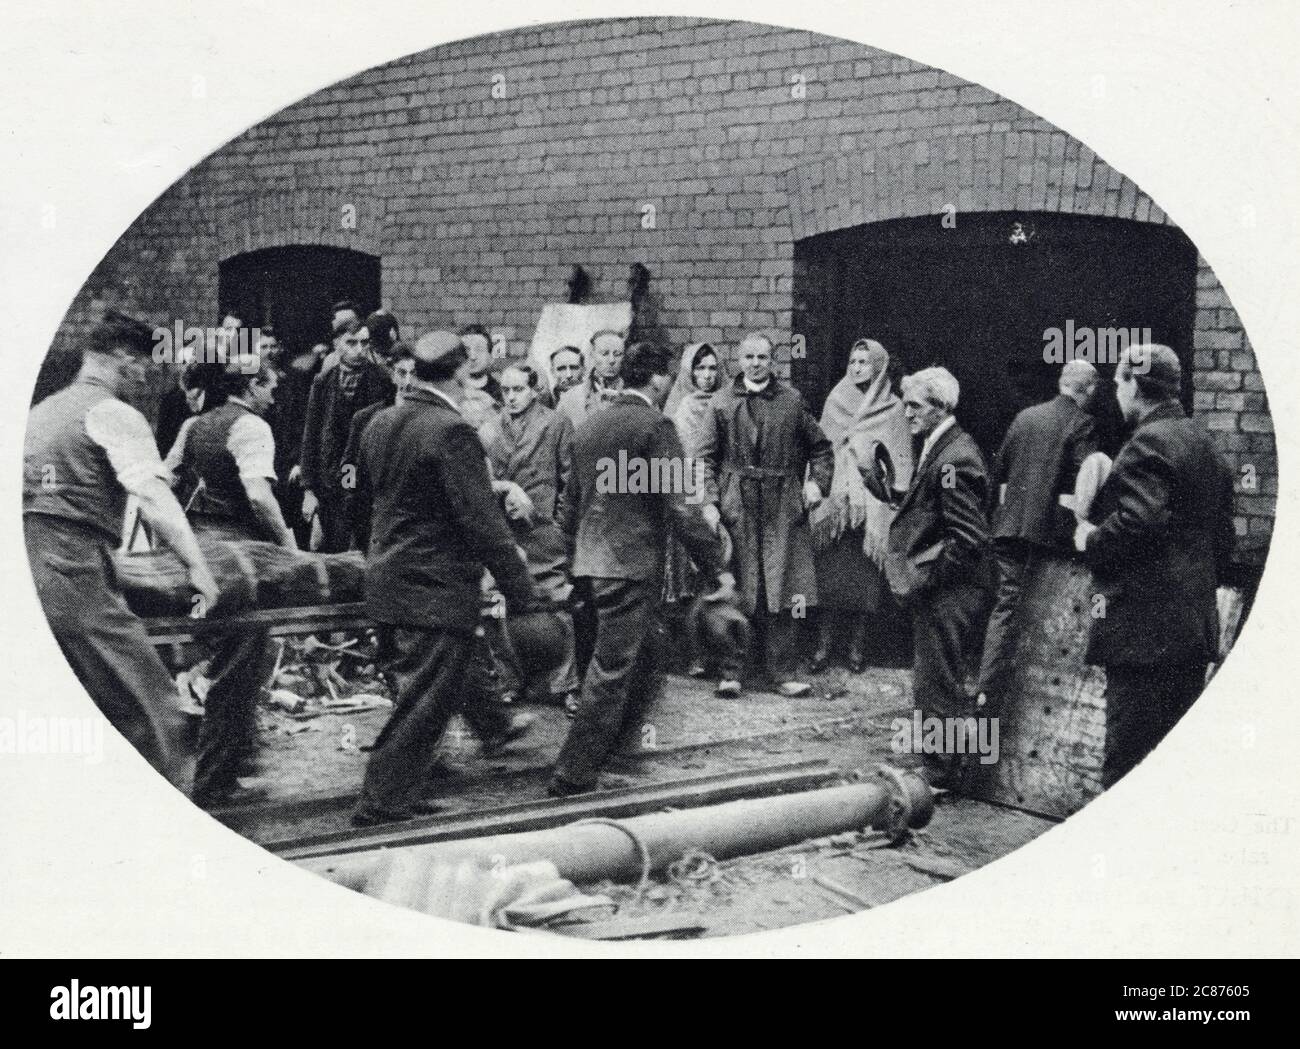 Bickershaw Colliery en Lancashire, donde ocurrió el desastre de las minas de carbón el 10 de octubre de 1932. Un ascensor de pozo de minas que transportaba a 20 personas cayó en la mina, matando a todas menos a una persona. Fotografía que muestra la parte de rescate que trae a uno de los fallecidos. Fecha: Octubre de 1932 Foto de stock